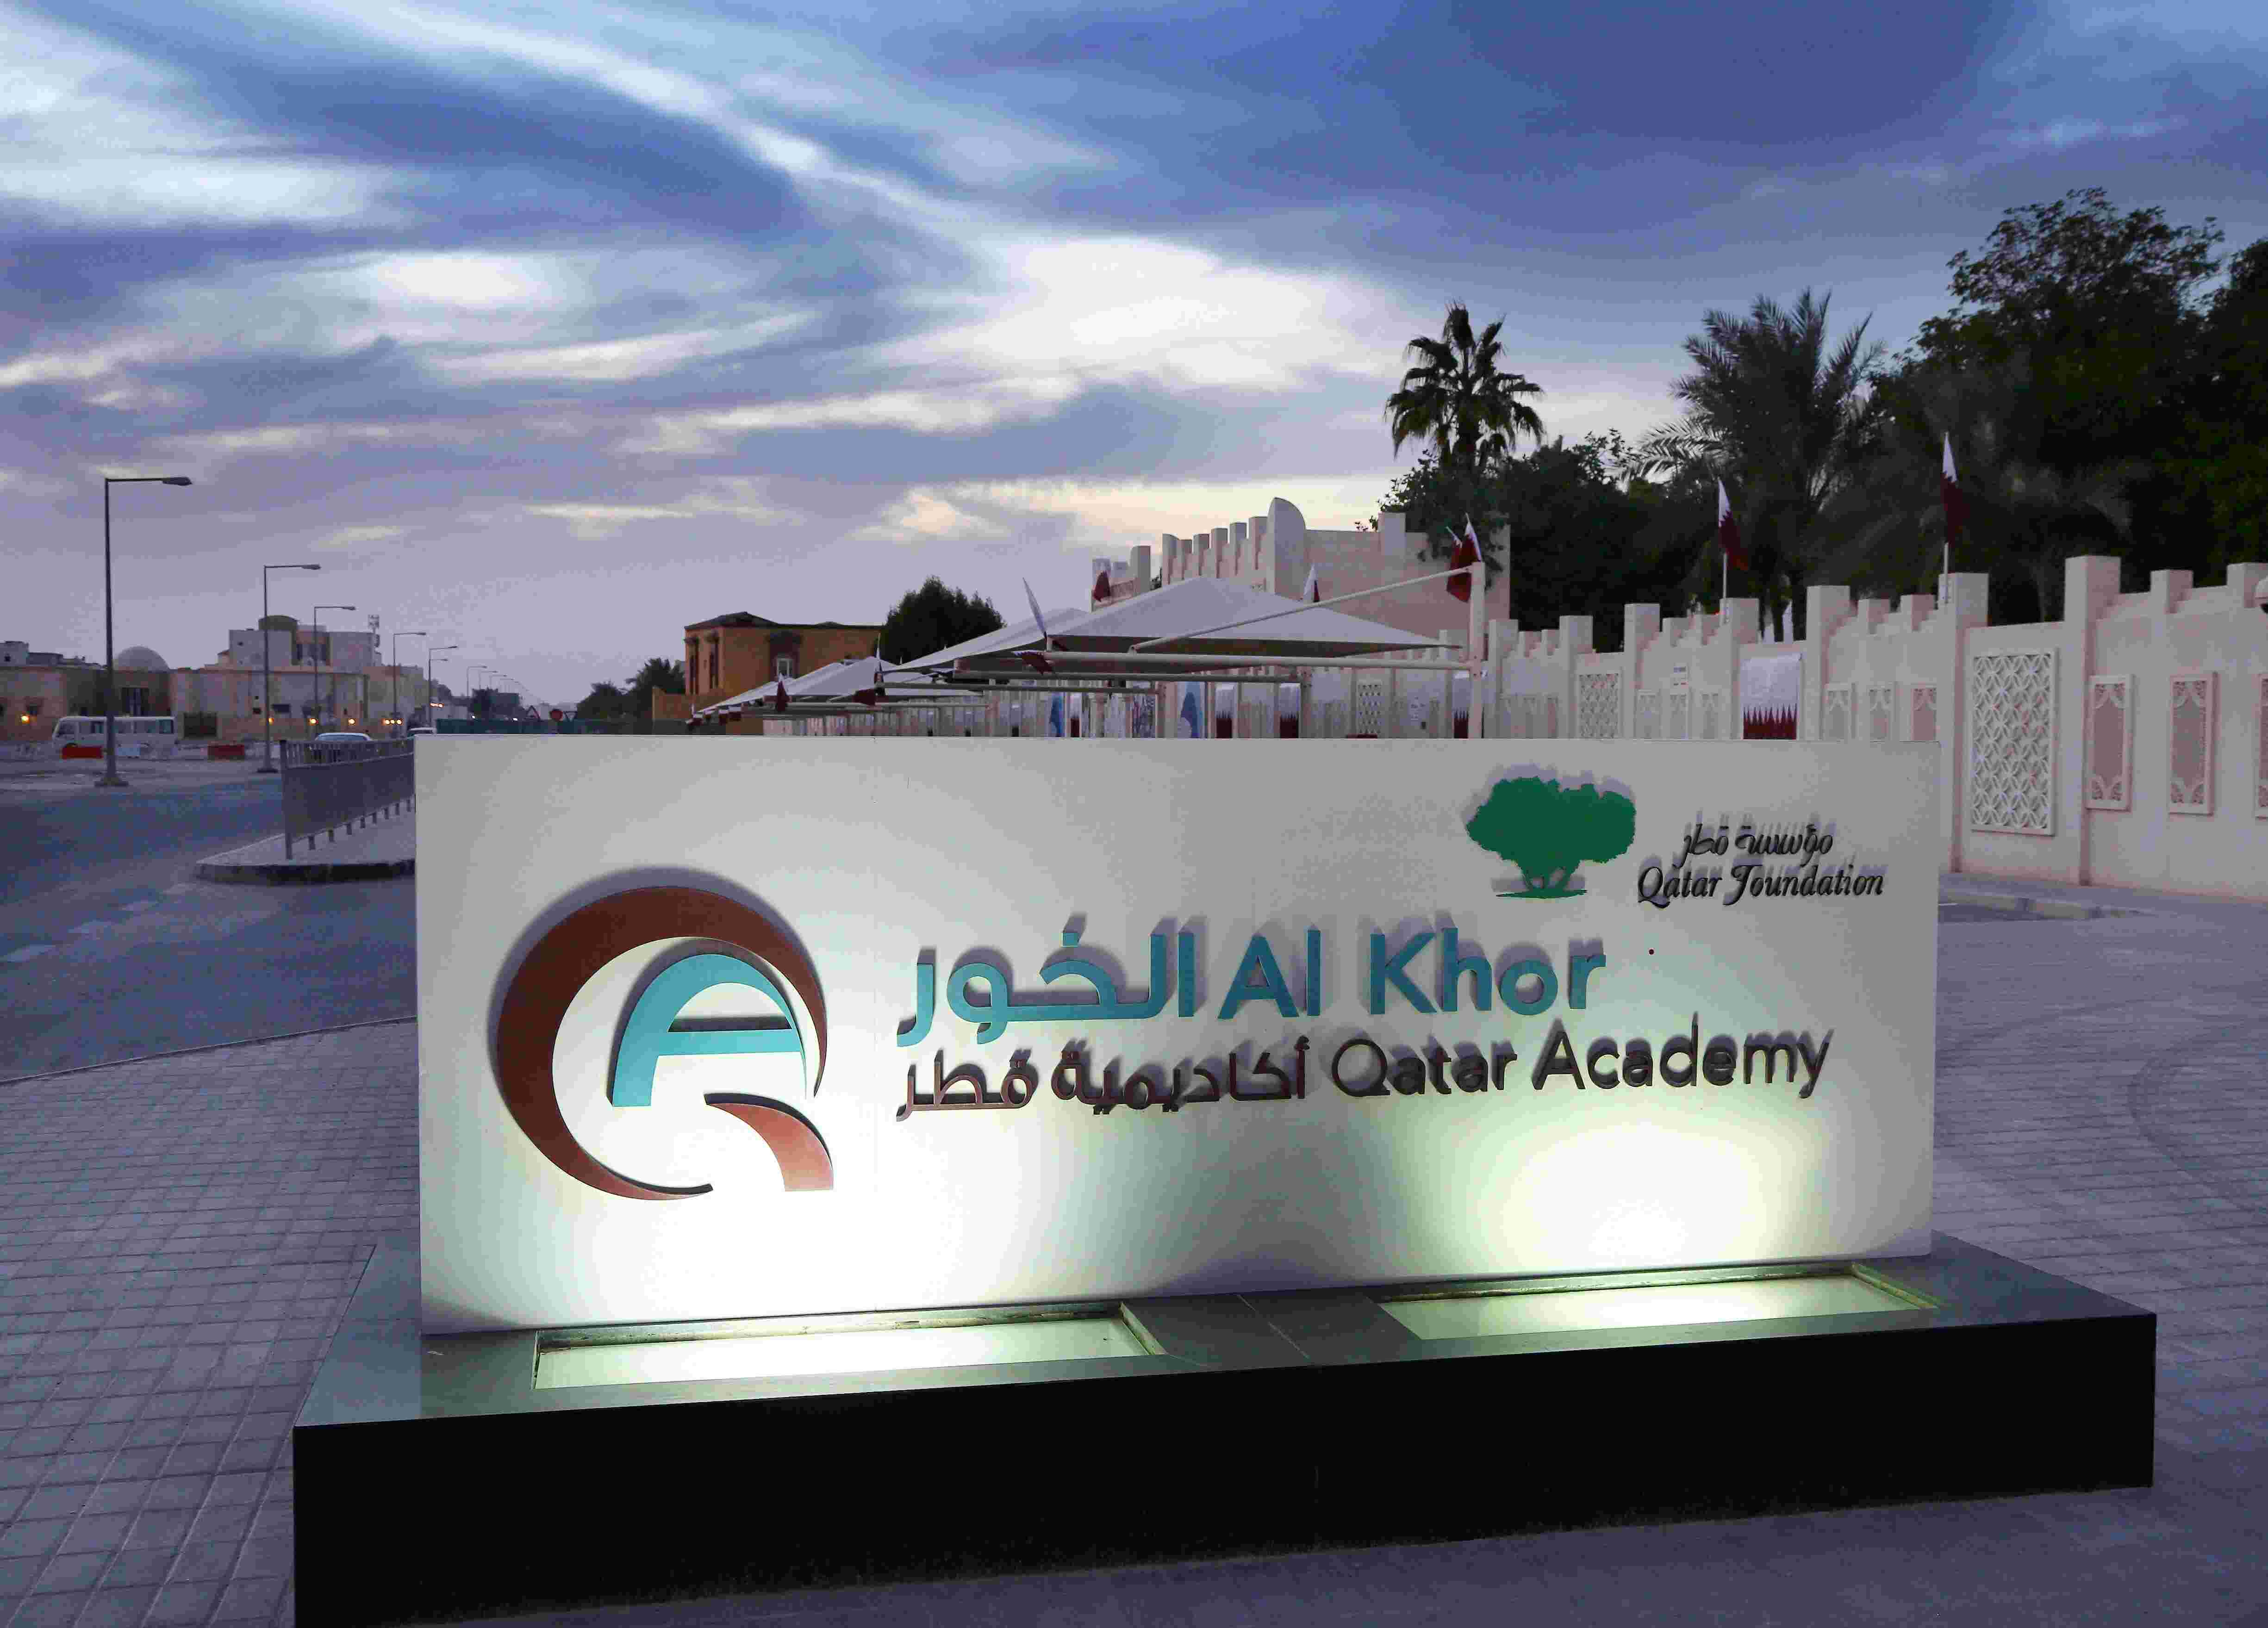 Qatar Academy Al Khor